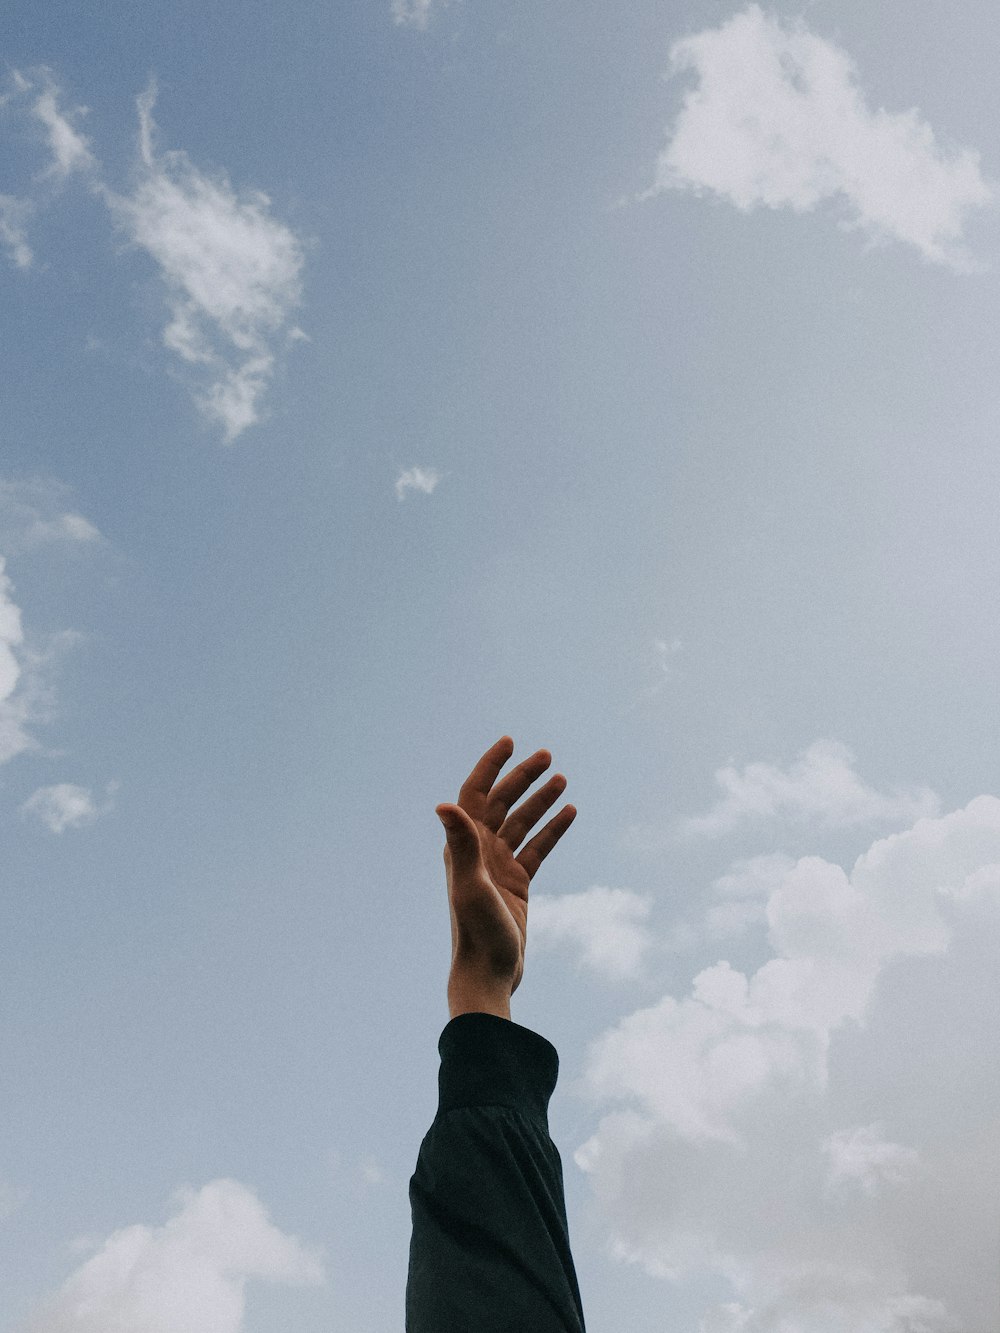 pessoa levantando a mão esquerda sob o céu nublado durante o dia